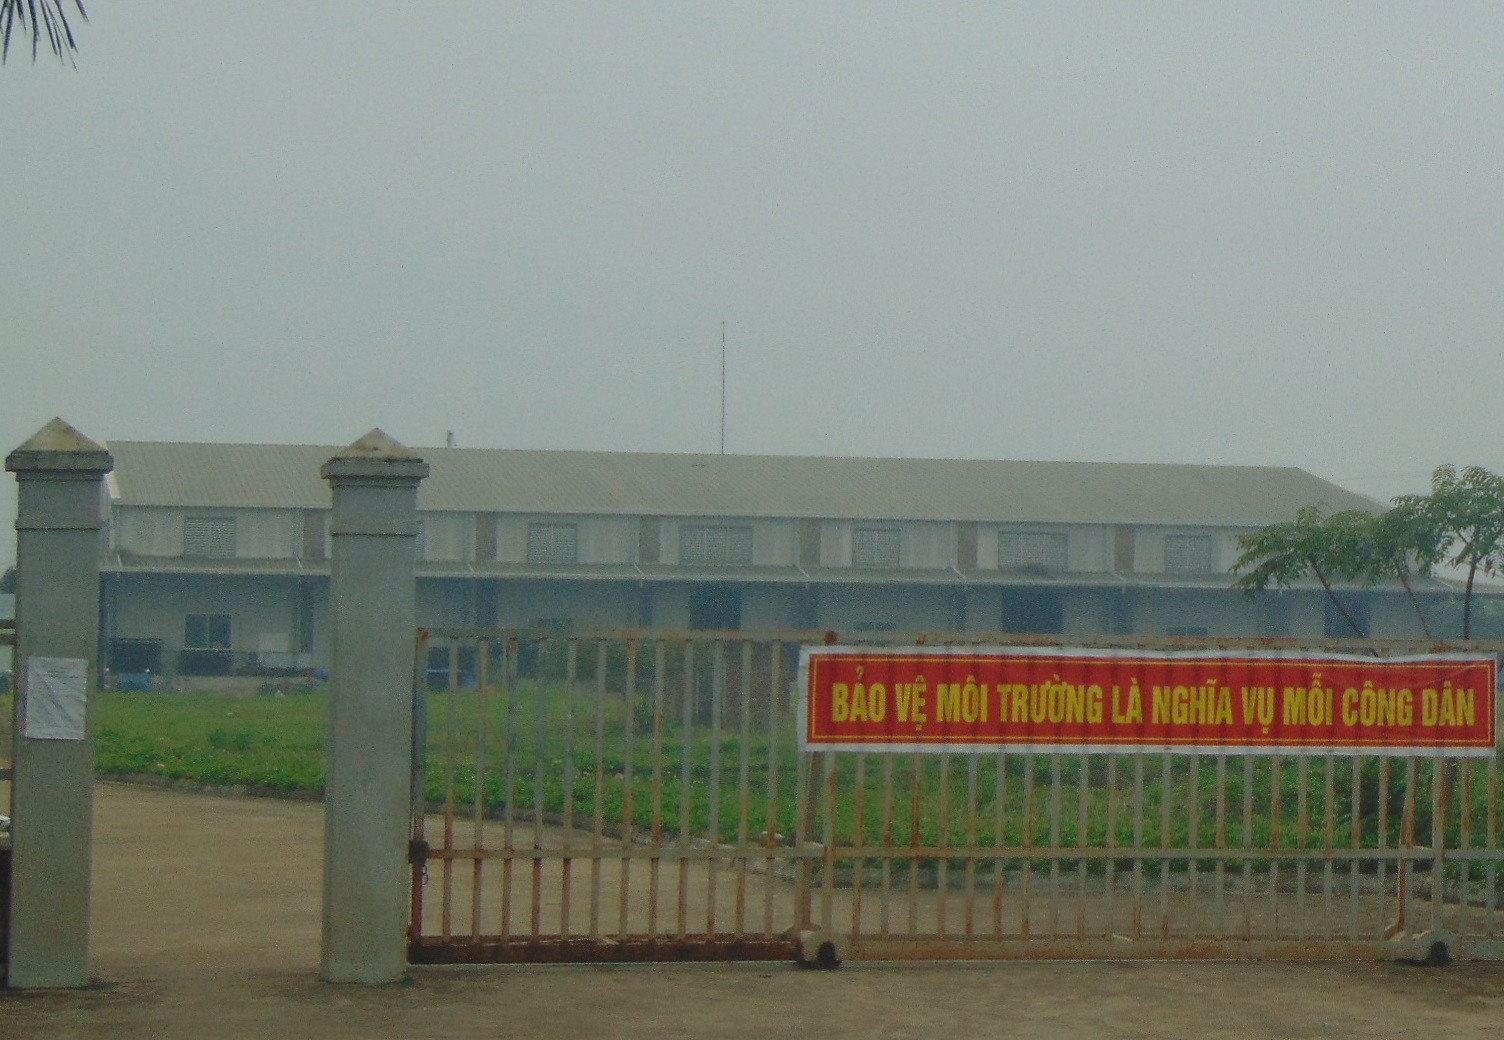 Xưởng sản xuất hương của công ty Ấn Độ, tại KCN Lương Sơn, Hòa Bình